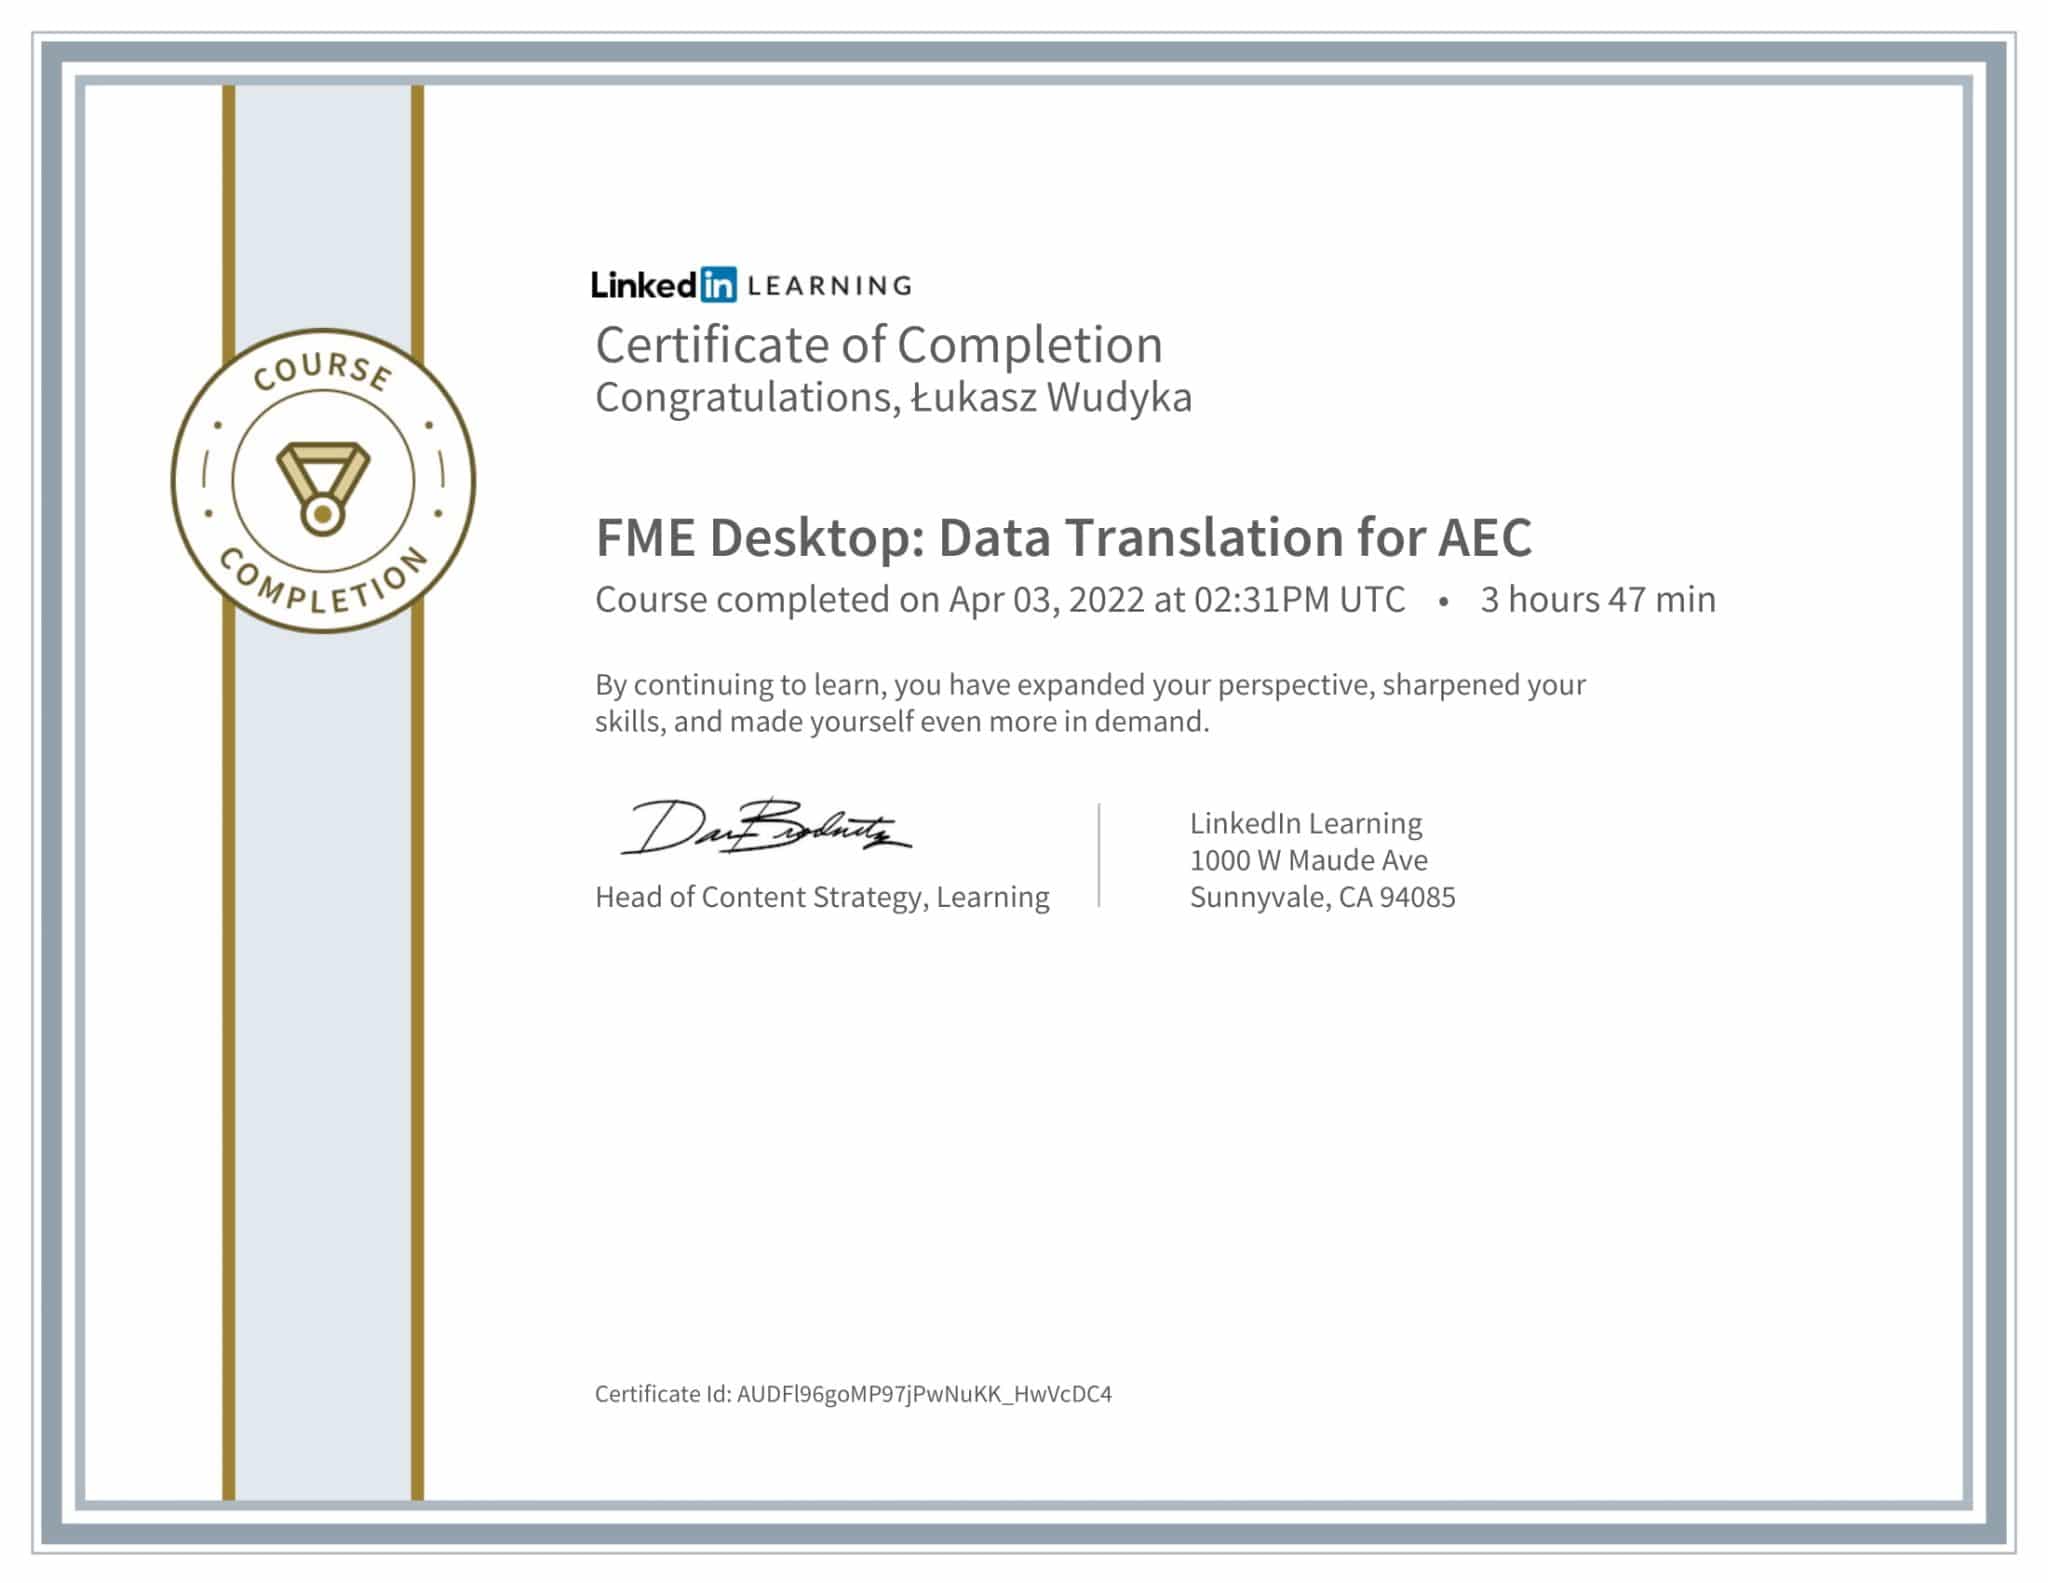 CertificateOfCompletion_FME Desktop Data Translation for AEC-1